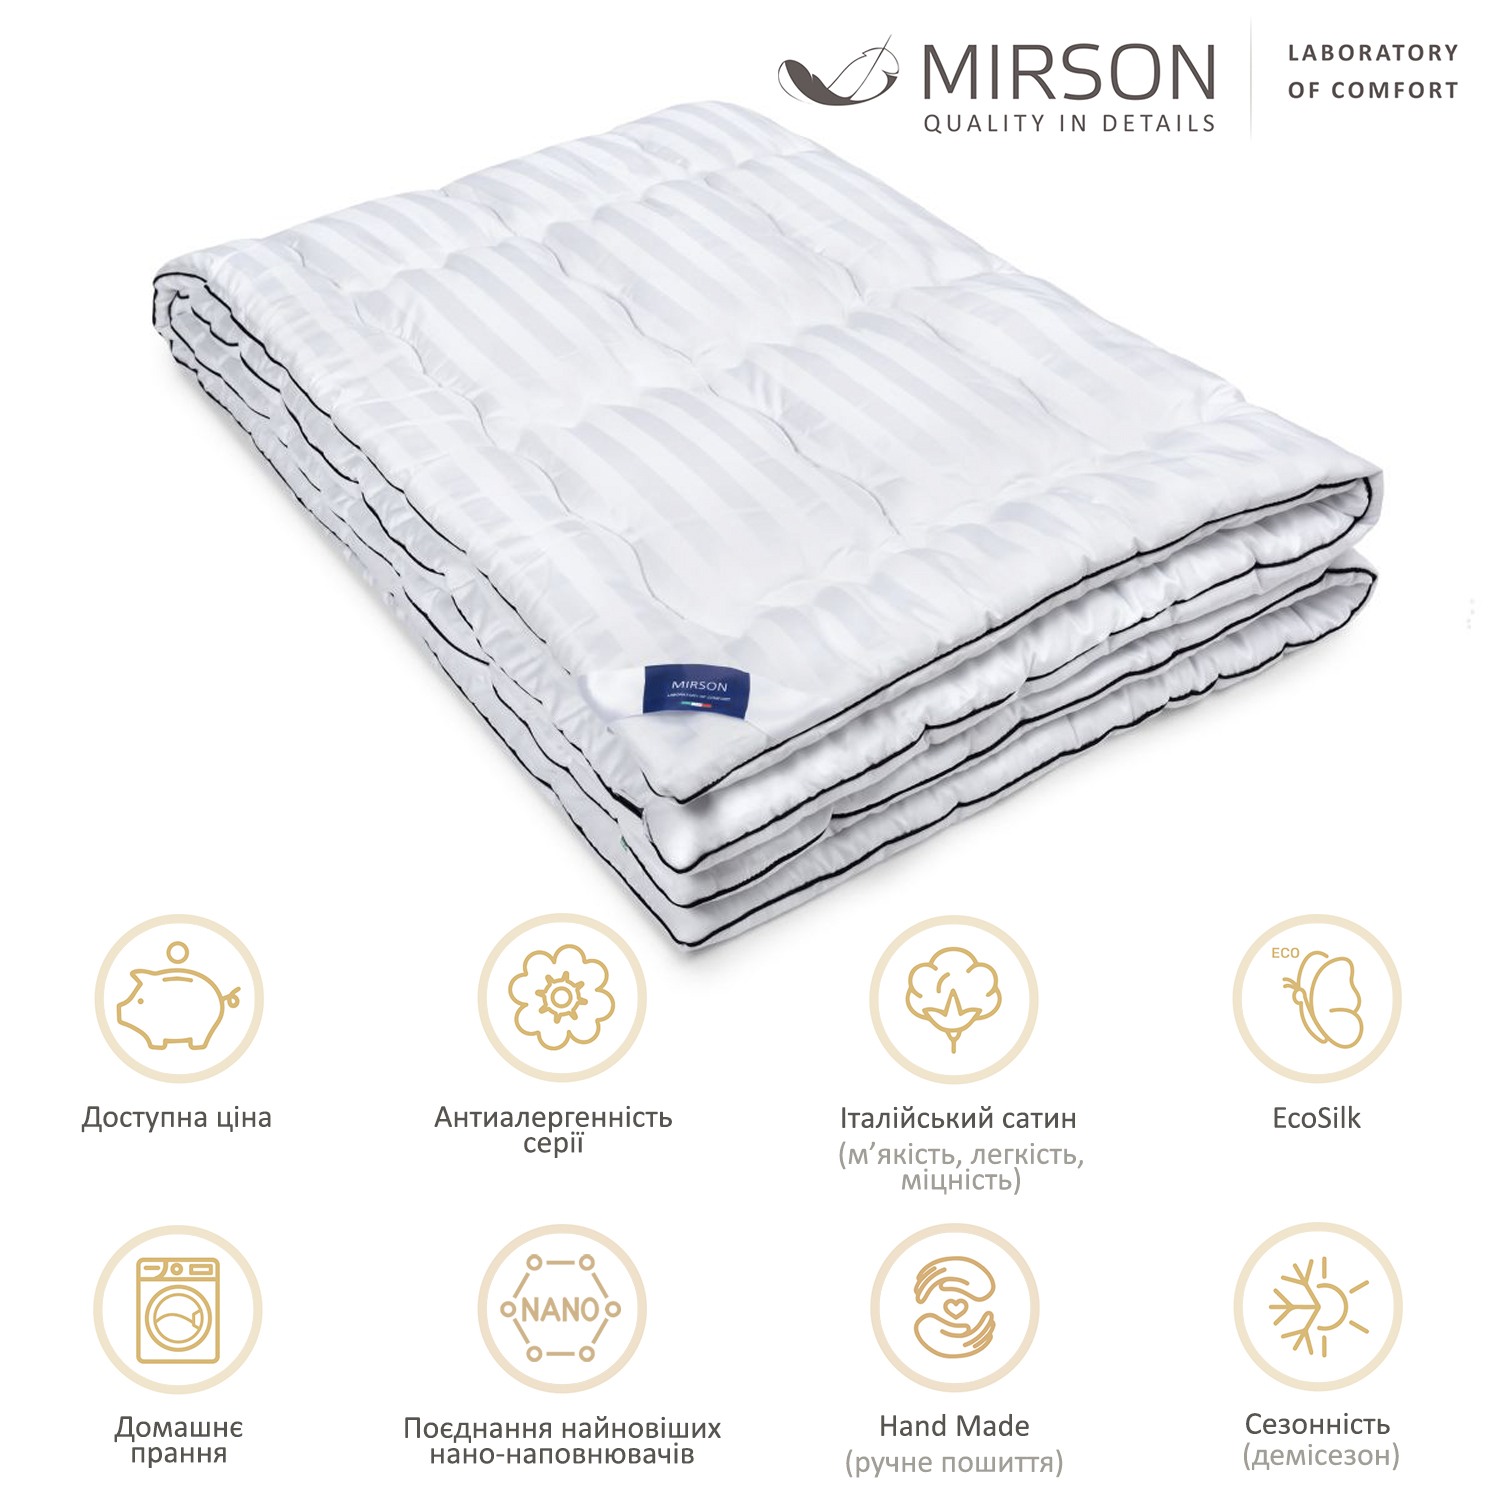 Одеяло антиаллергенное MirSon Royal Pearl Hand Made EcoSilk №066, демисезонное, 200x220 см, белое - фото 5